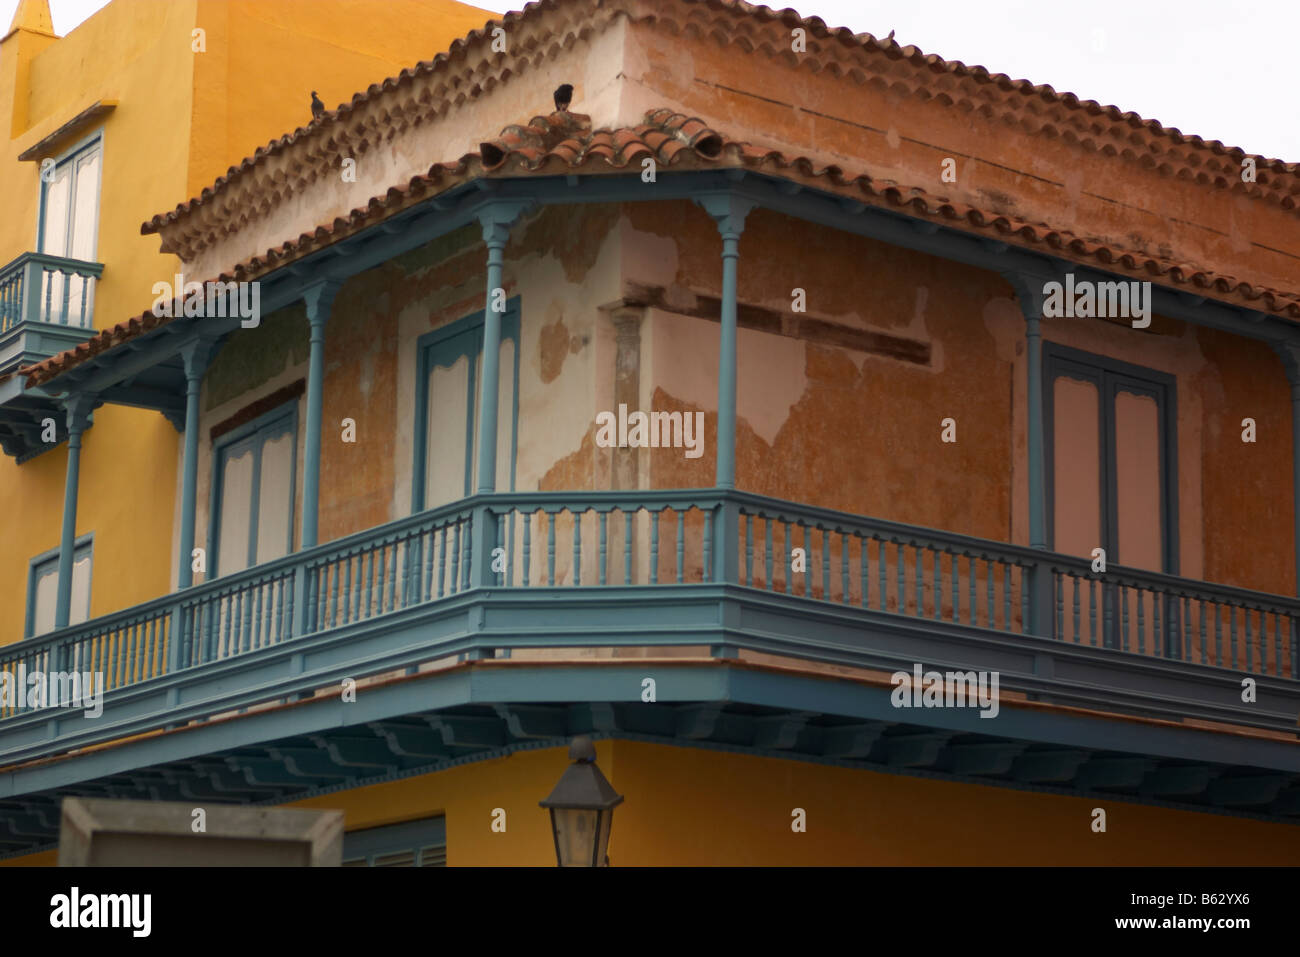 Edificio cubano o architettura con balcone e finestre con persiane, antiche strade, habana vieja o vecchia Havana, Cuba Foto Stock